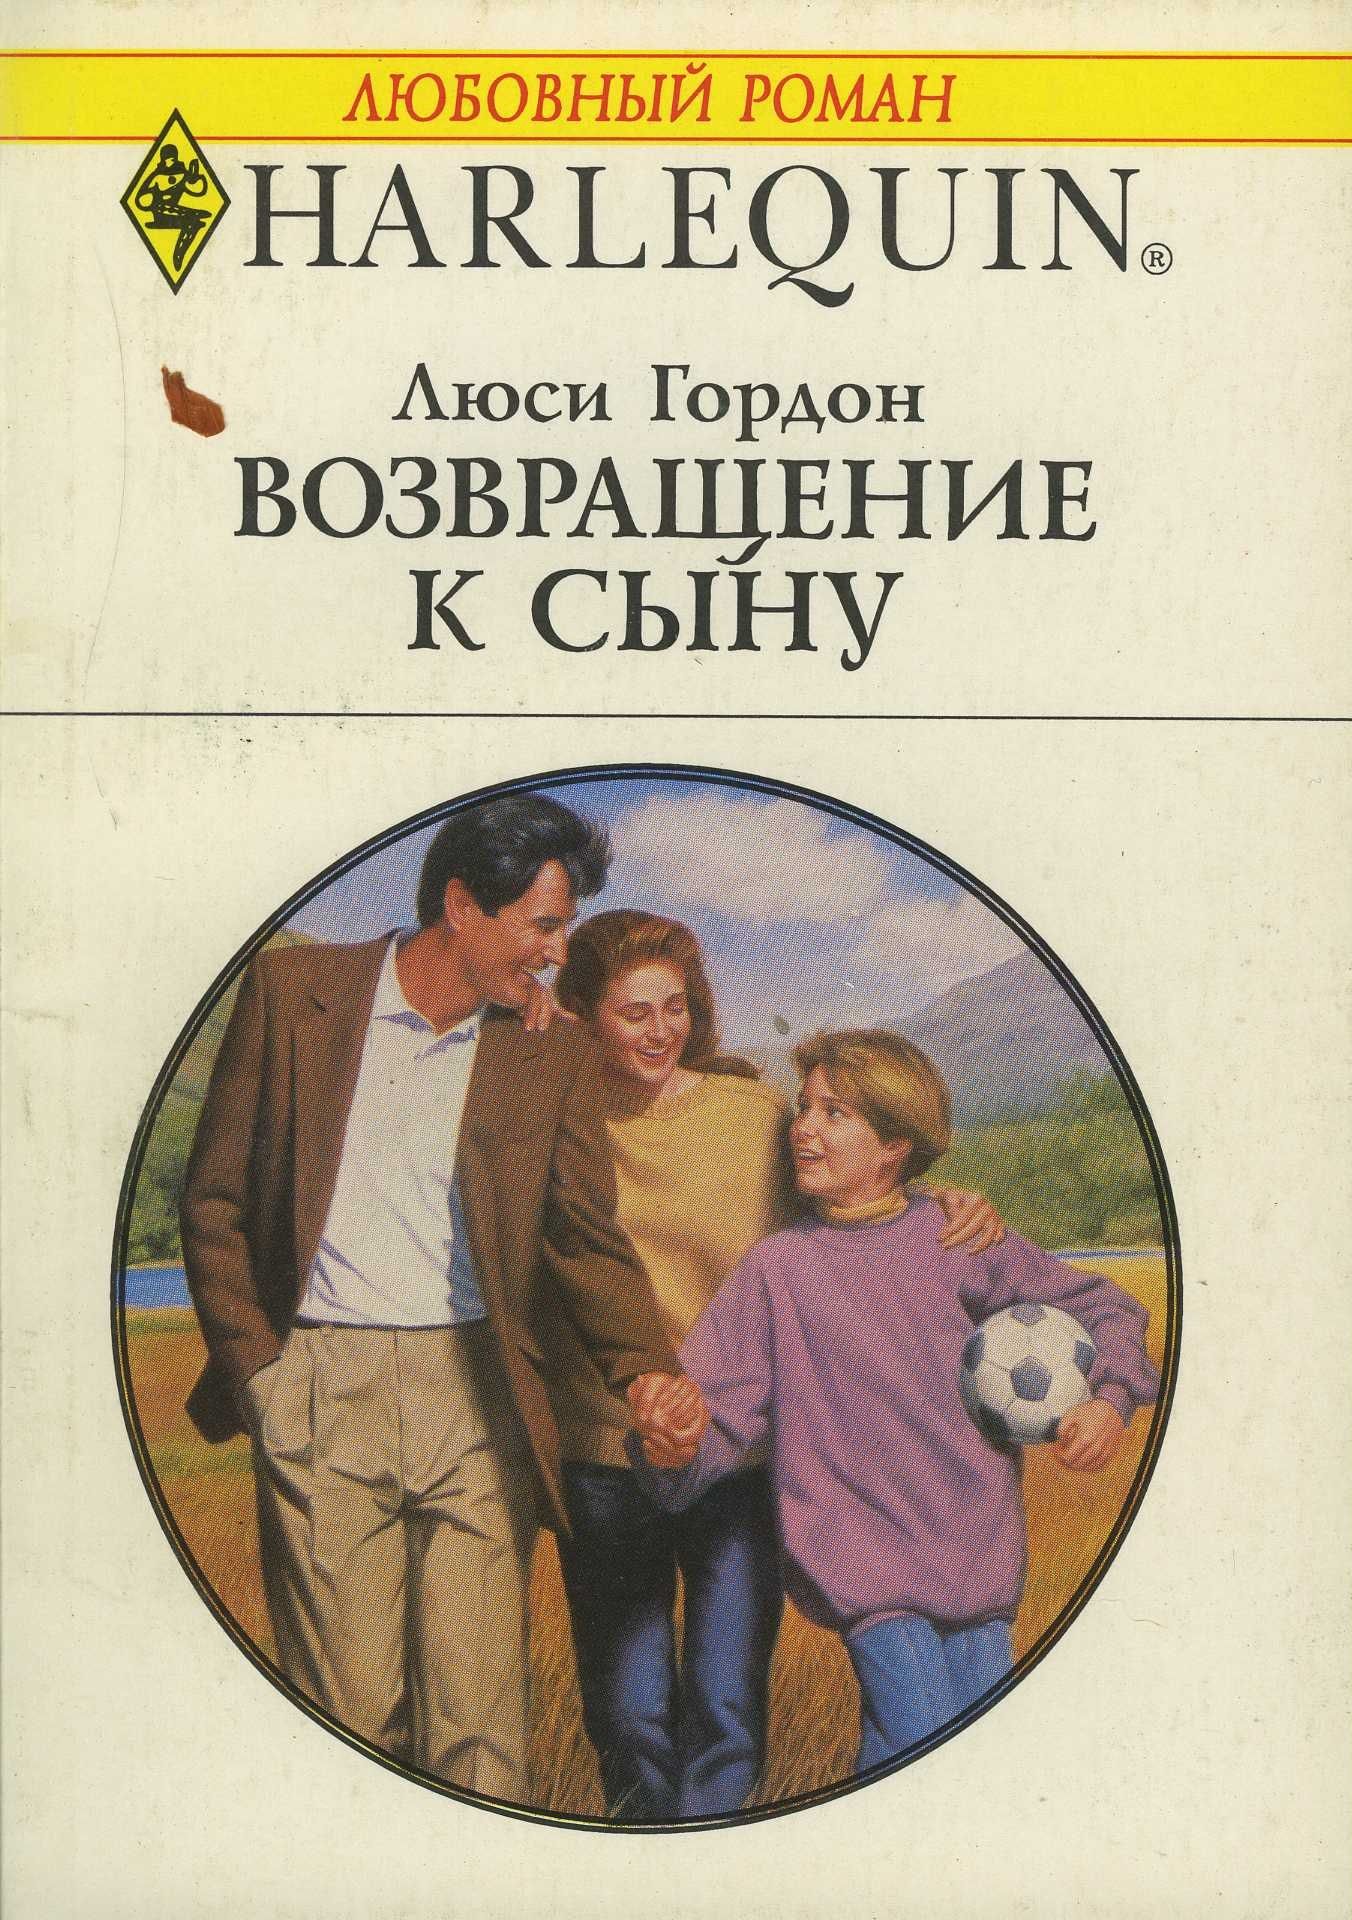 Читать сын 18. Книга Возвращение к сыну 1996.